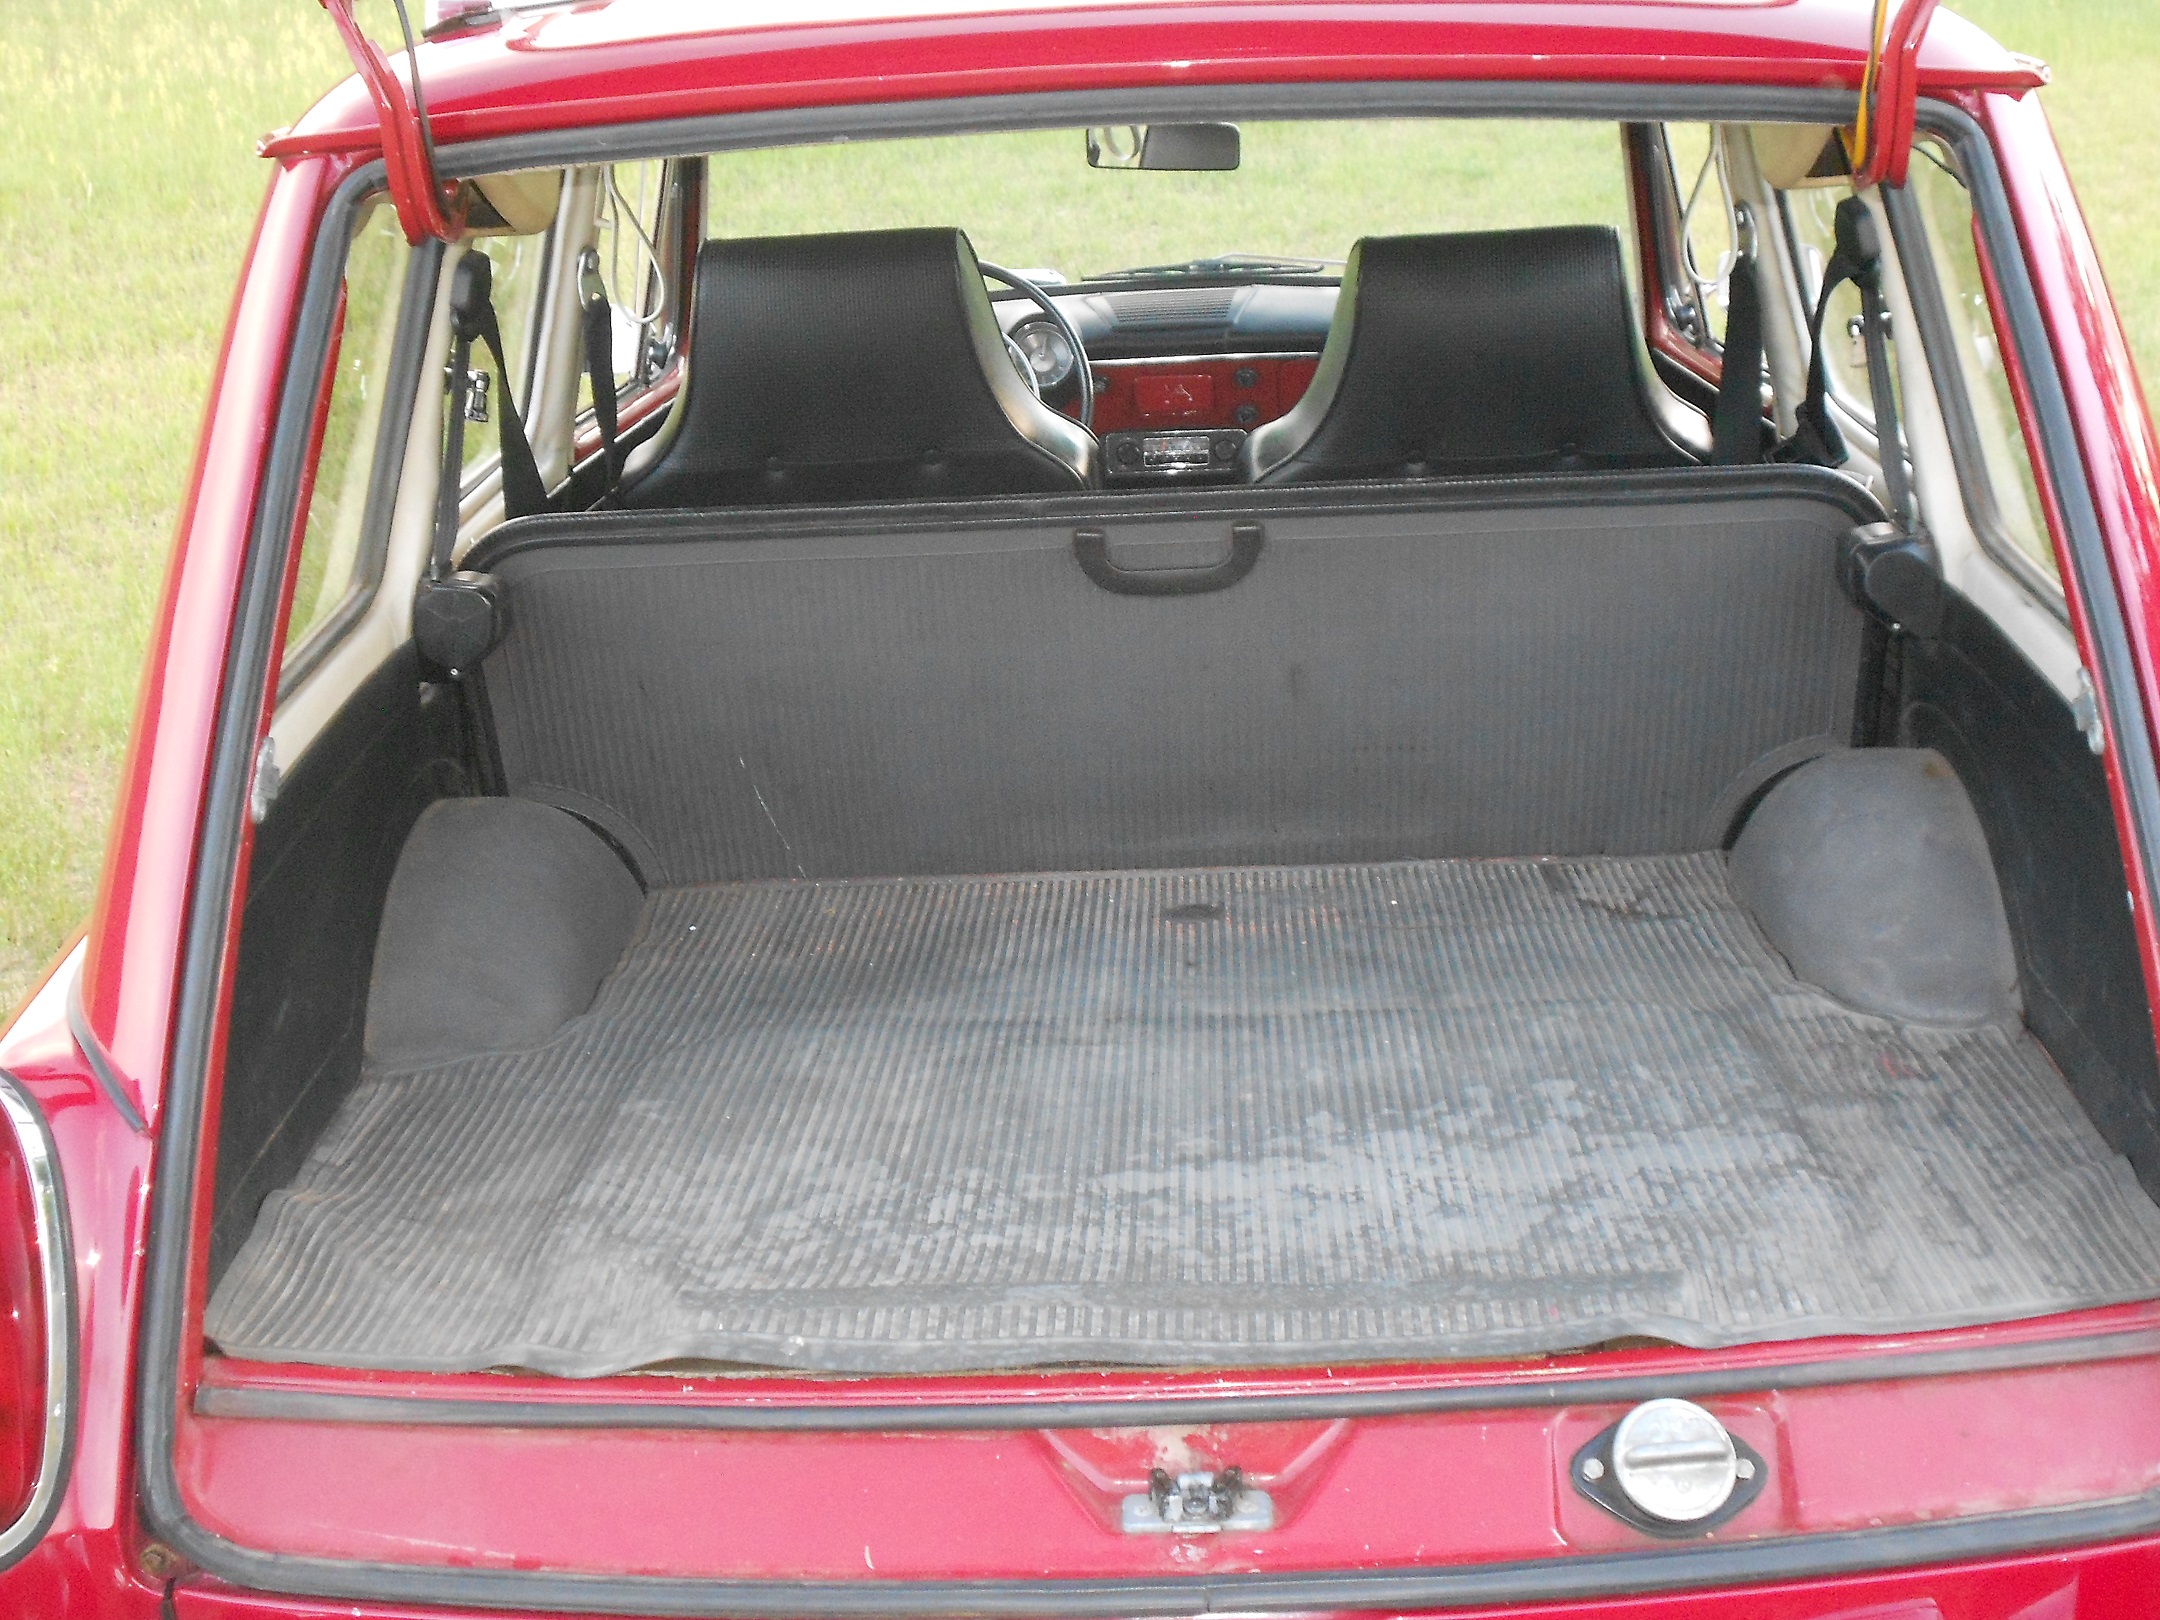 3 Belts SafTboy VW Type 3 Squareback Airplane 2pt Red Lap Bench Seat Belt Kit